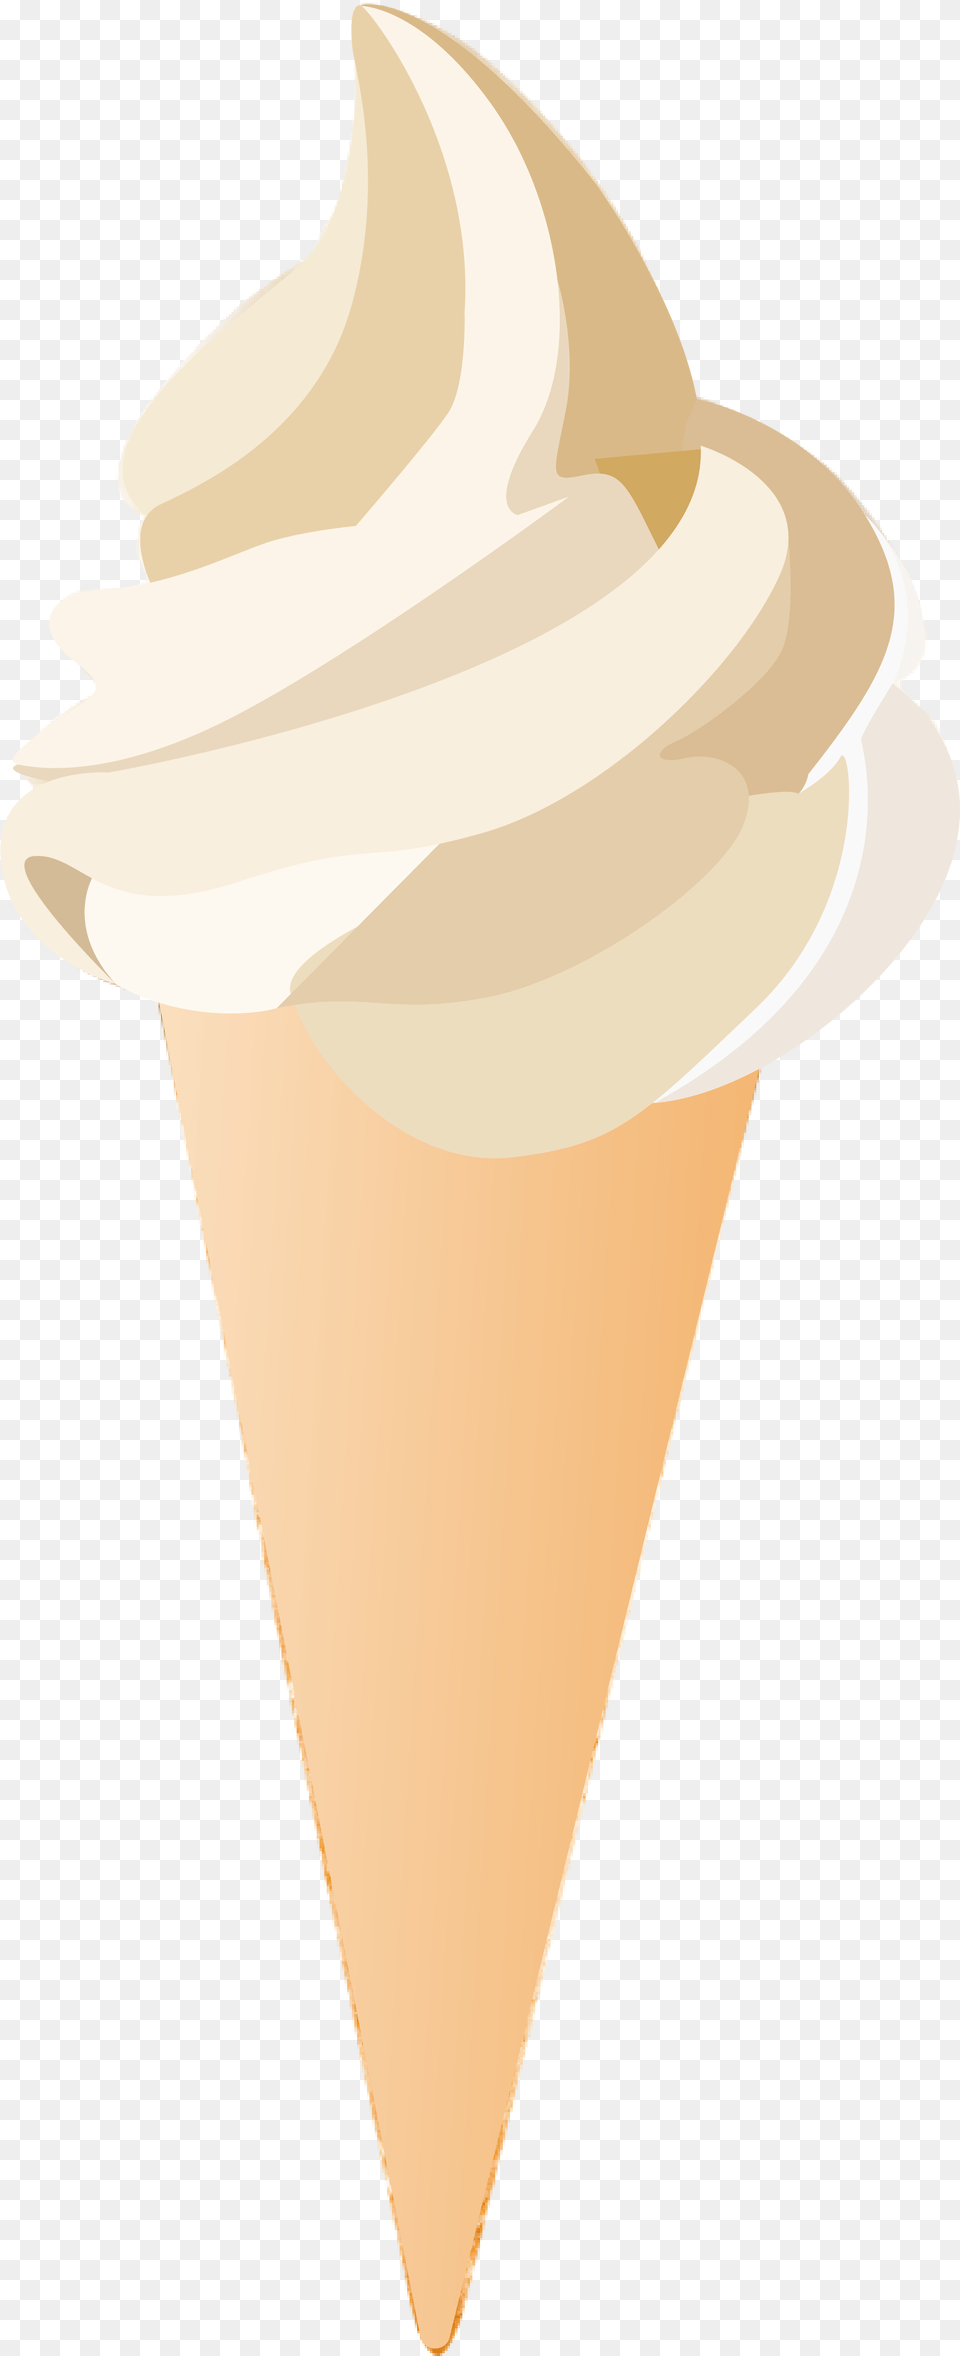 Ice Cream Vector Ice Cream Cone, Dessert, Food, Ice Cream, Person Free Transparent Png